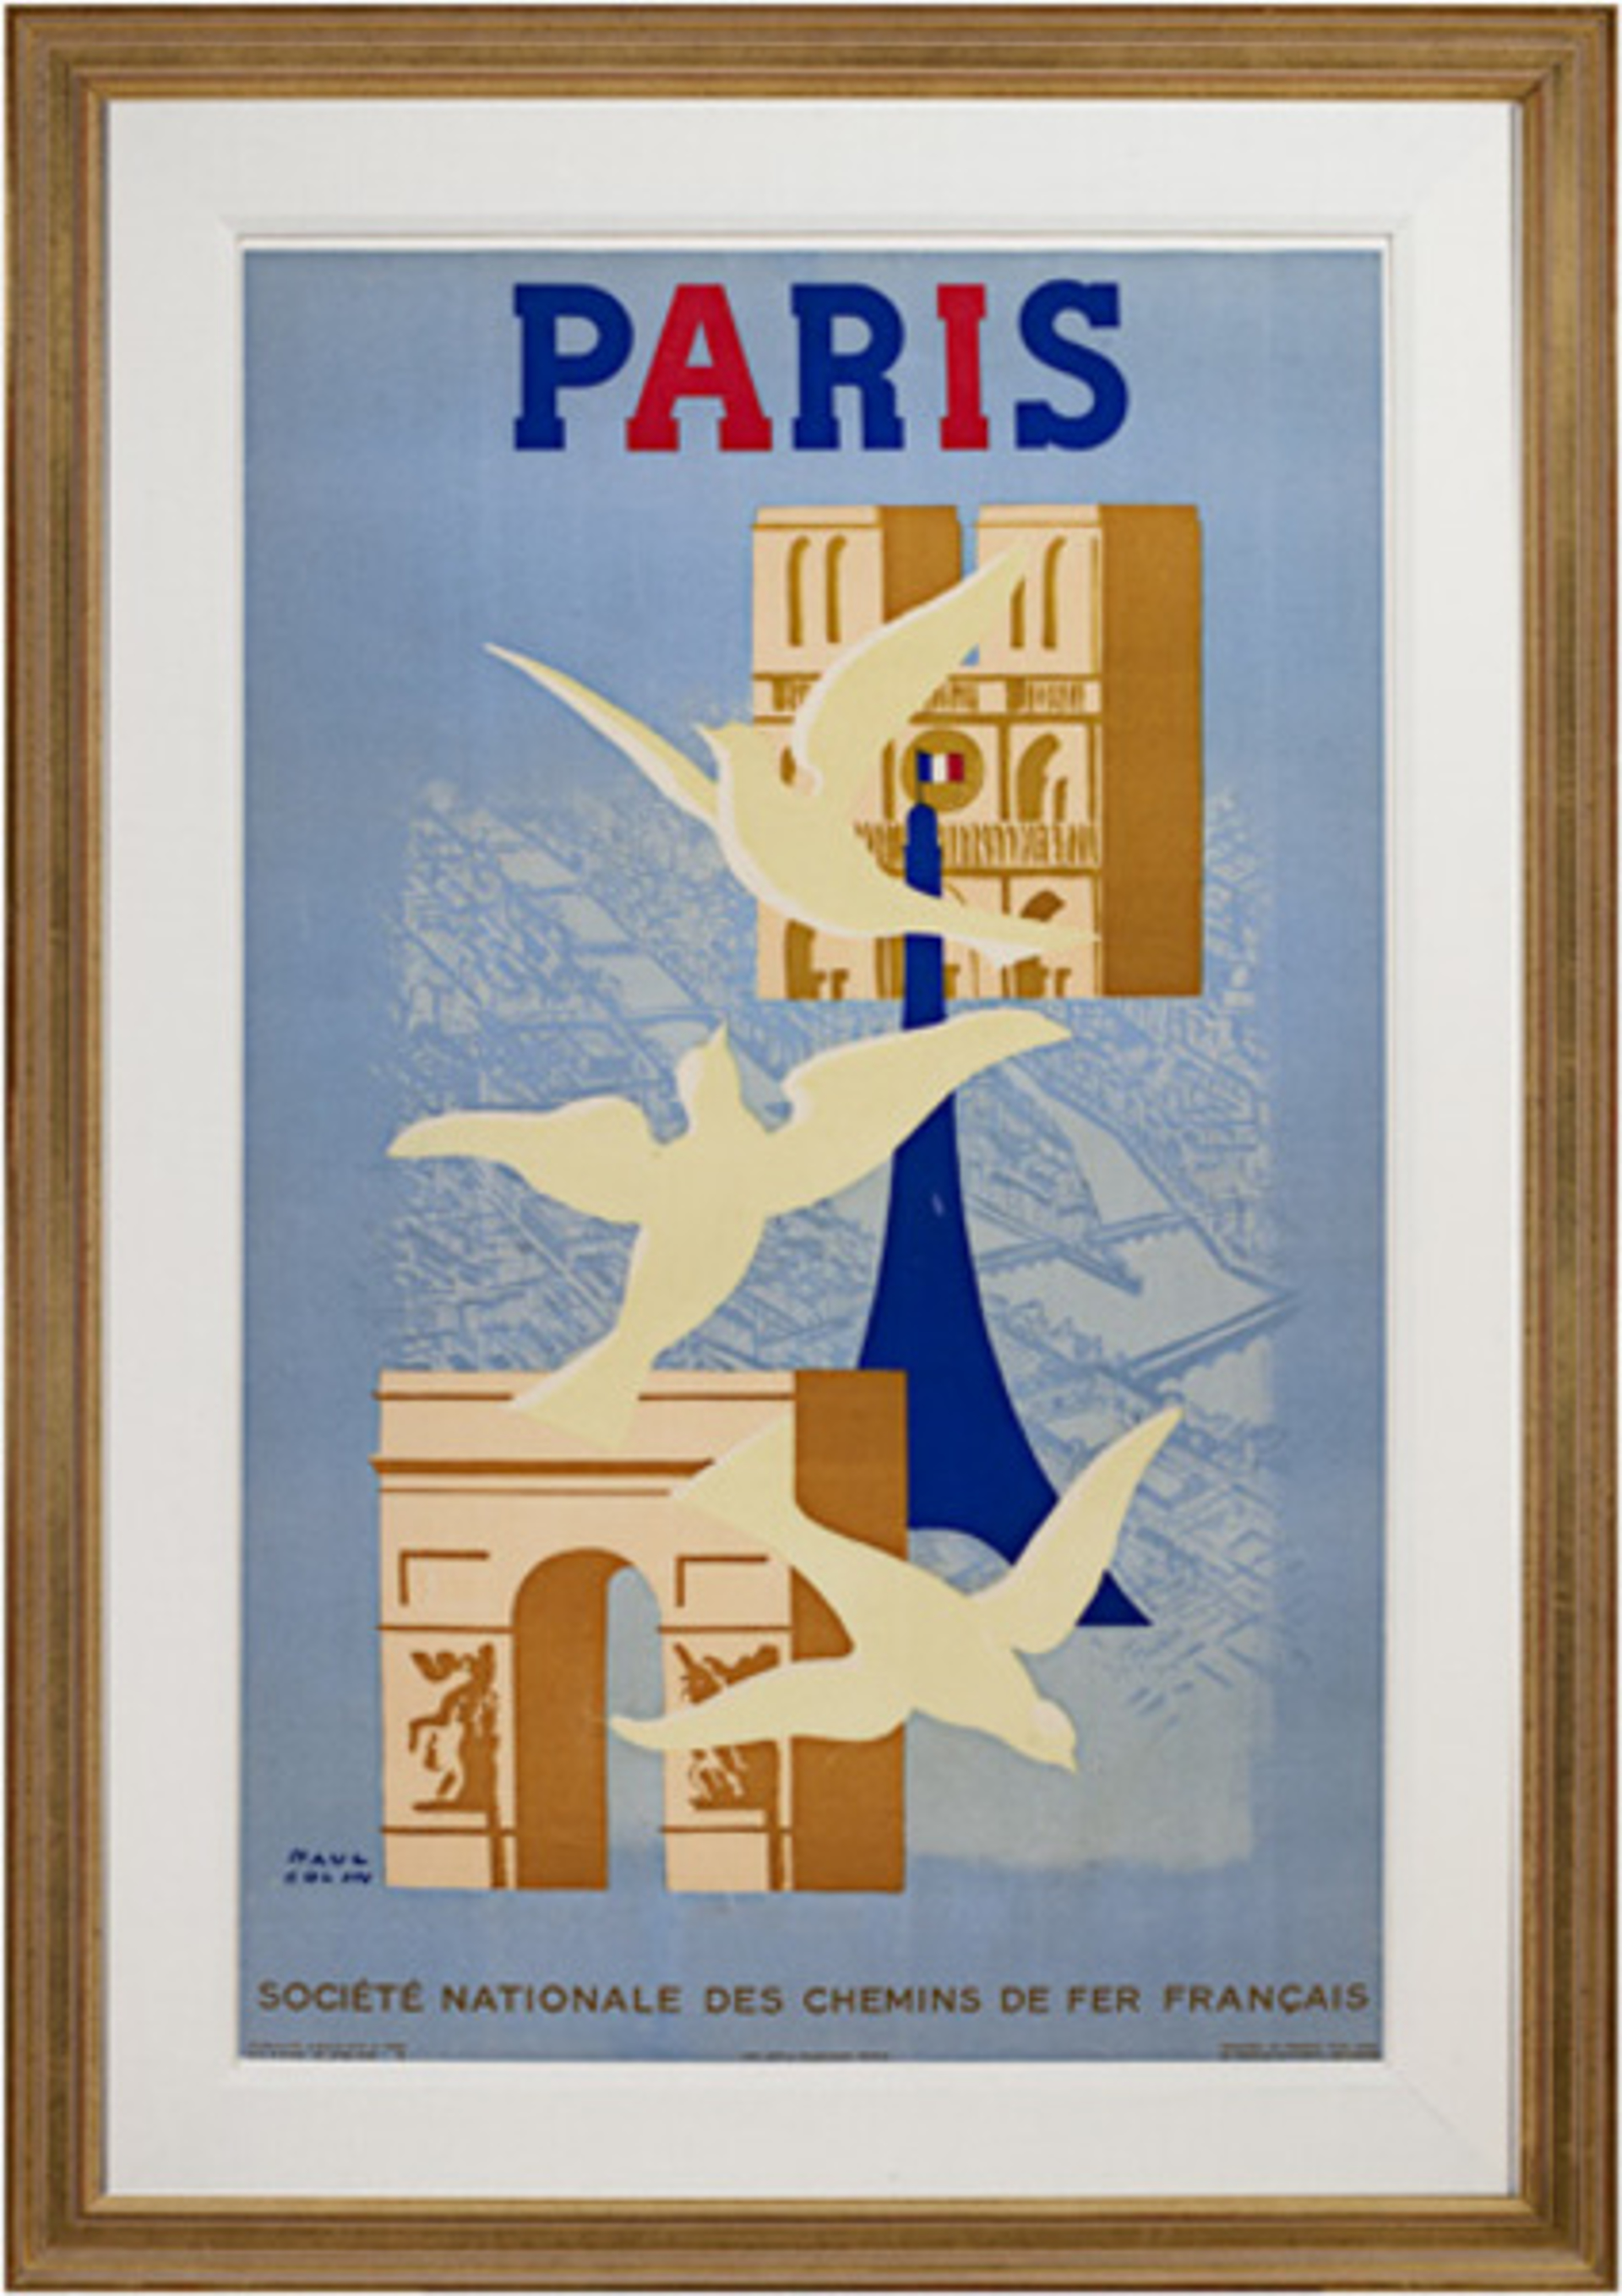 Paris by Paul Colin